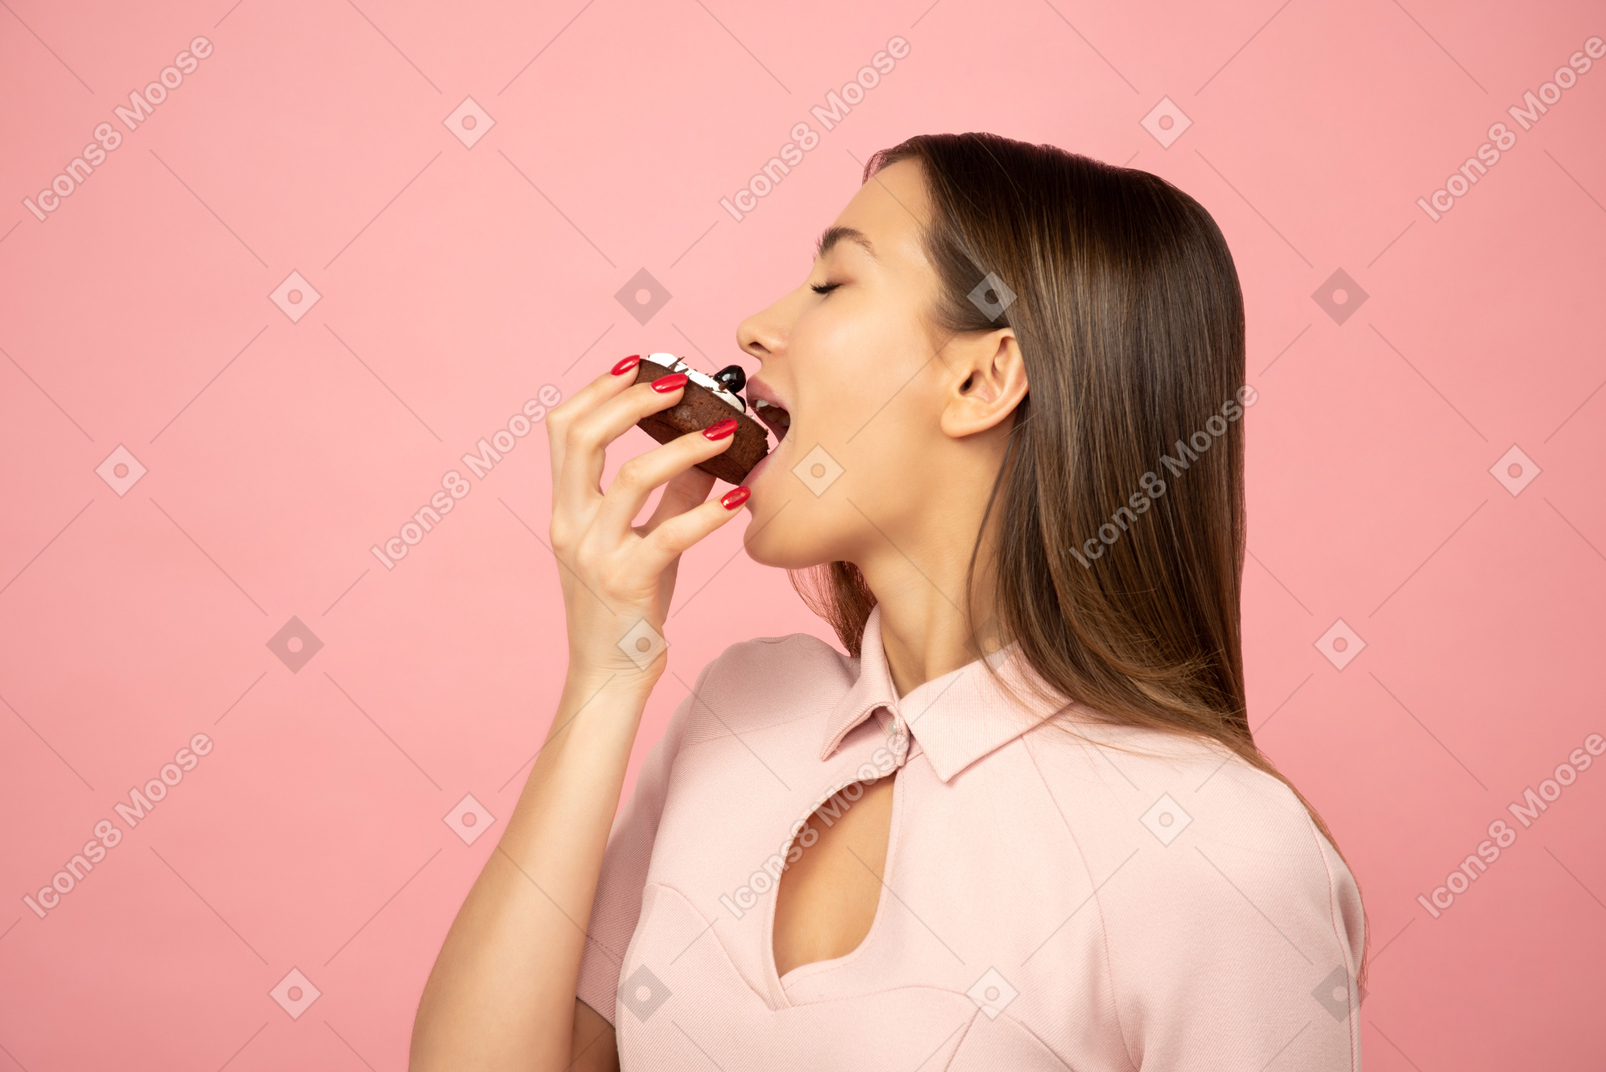 Attraktives mädchen, das einen kuchen isst und ihren finger leckt